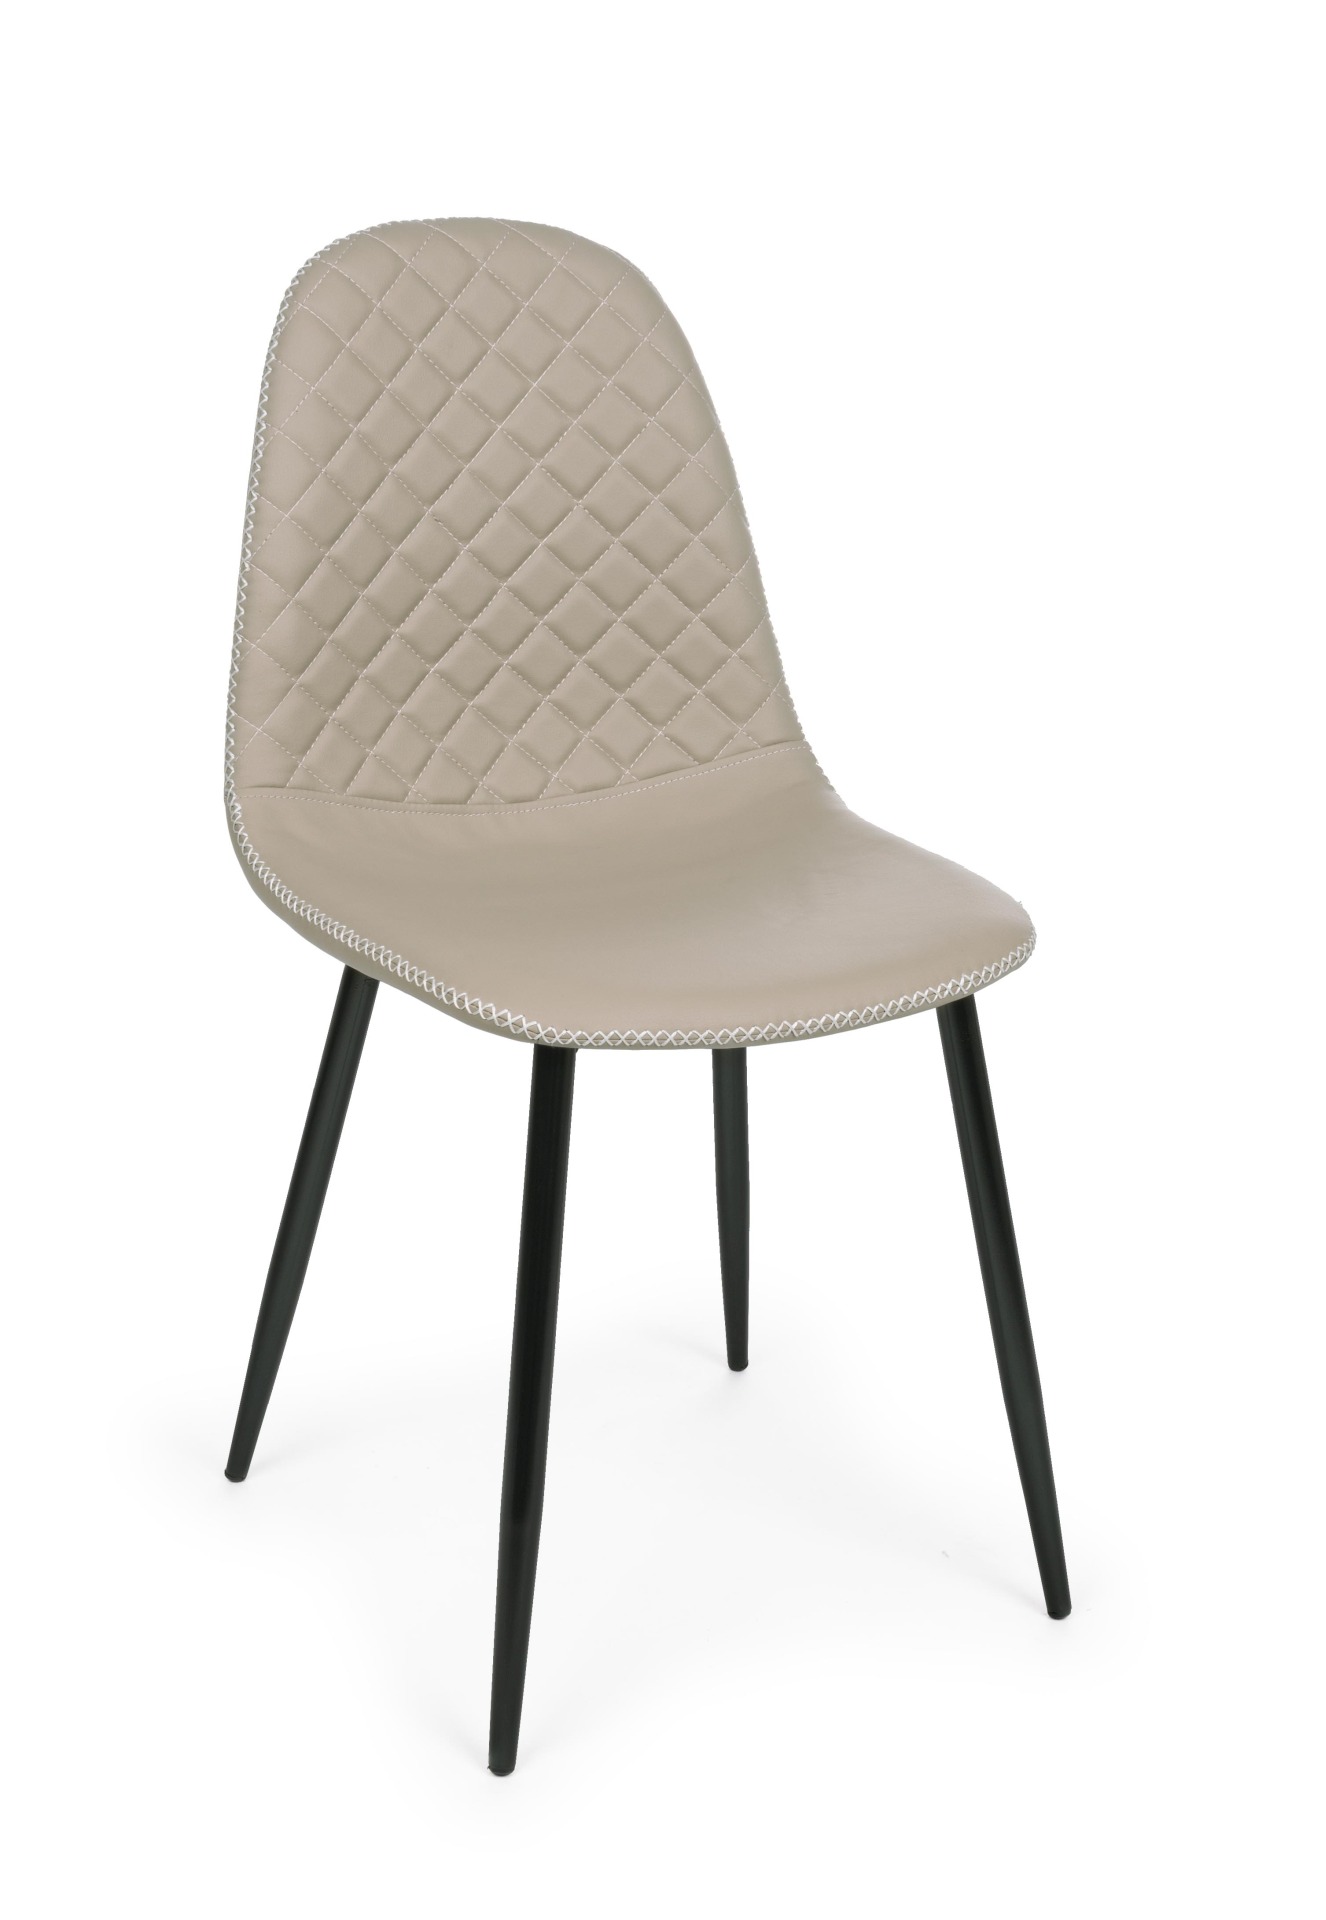 Der Esszimmerstuhl Amanda überzeugt mit seinem modernem Design. Gefertigt wurde der Stuhl aus Kunstleder, welches einen Taupe Farbton besitzt. Das Gestell ist aus Metall und ist Schwarz. Die Sitzhöhe beträgt 49 cm.